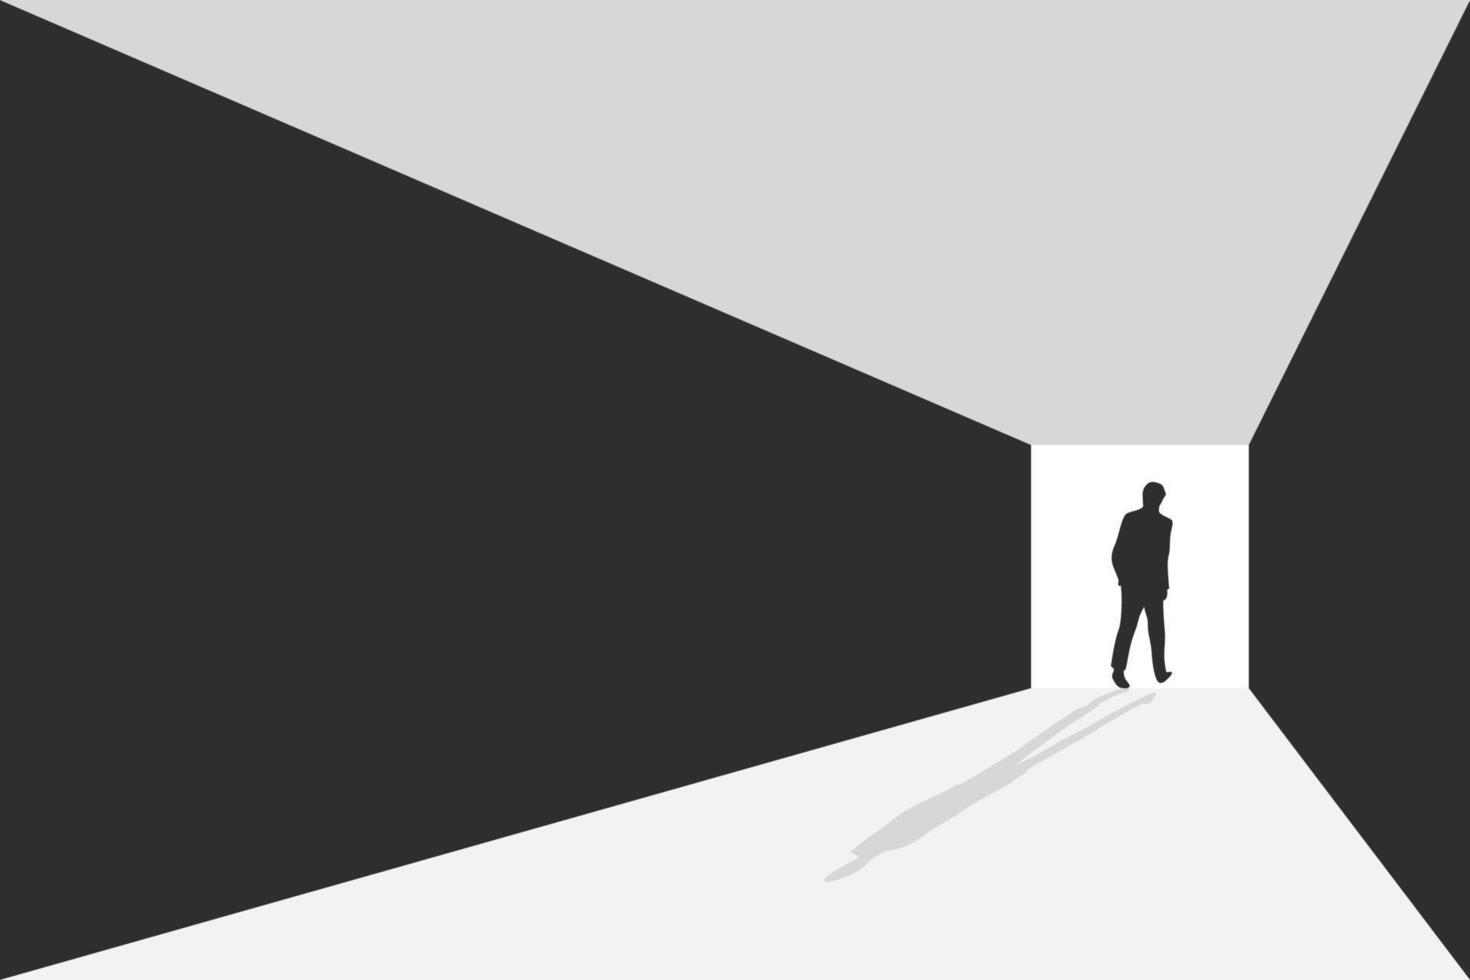 vista de perspectiva. hombres de negocios caminando por el camino iluminado, ilustración vectorial vector